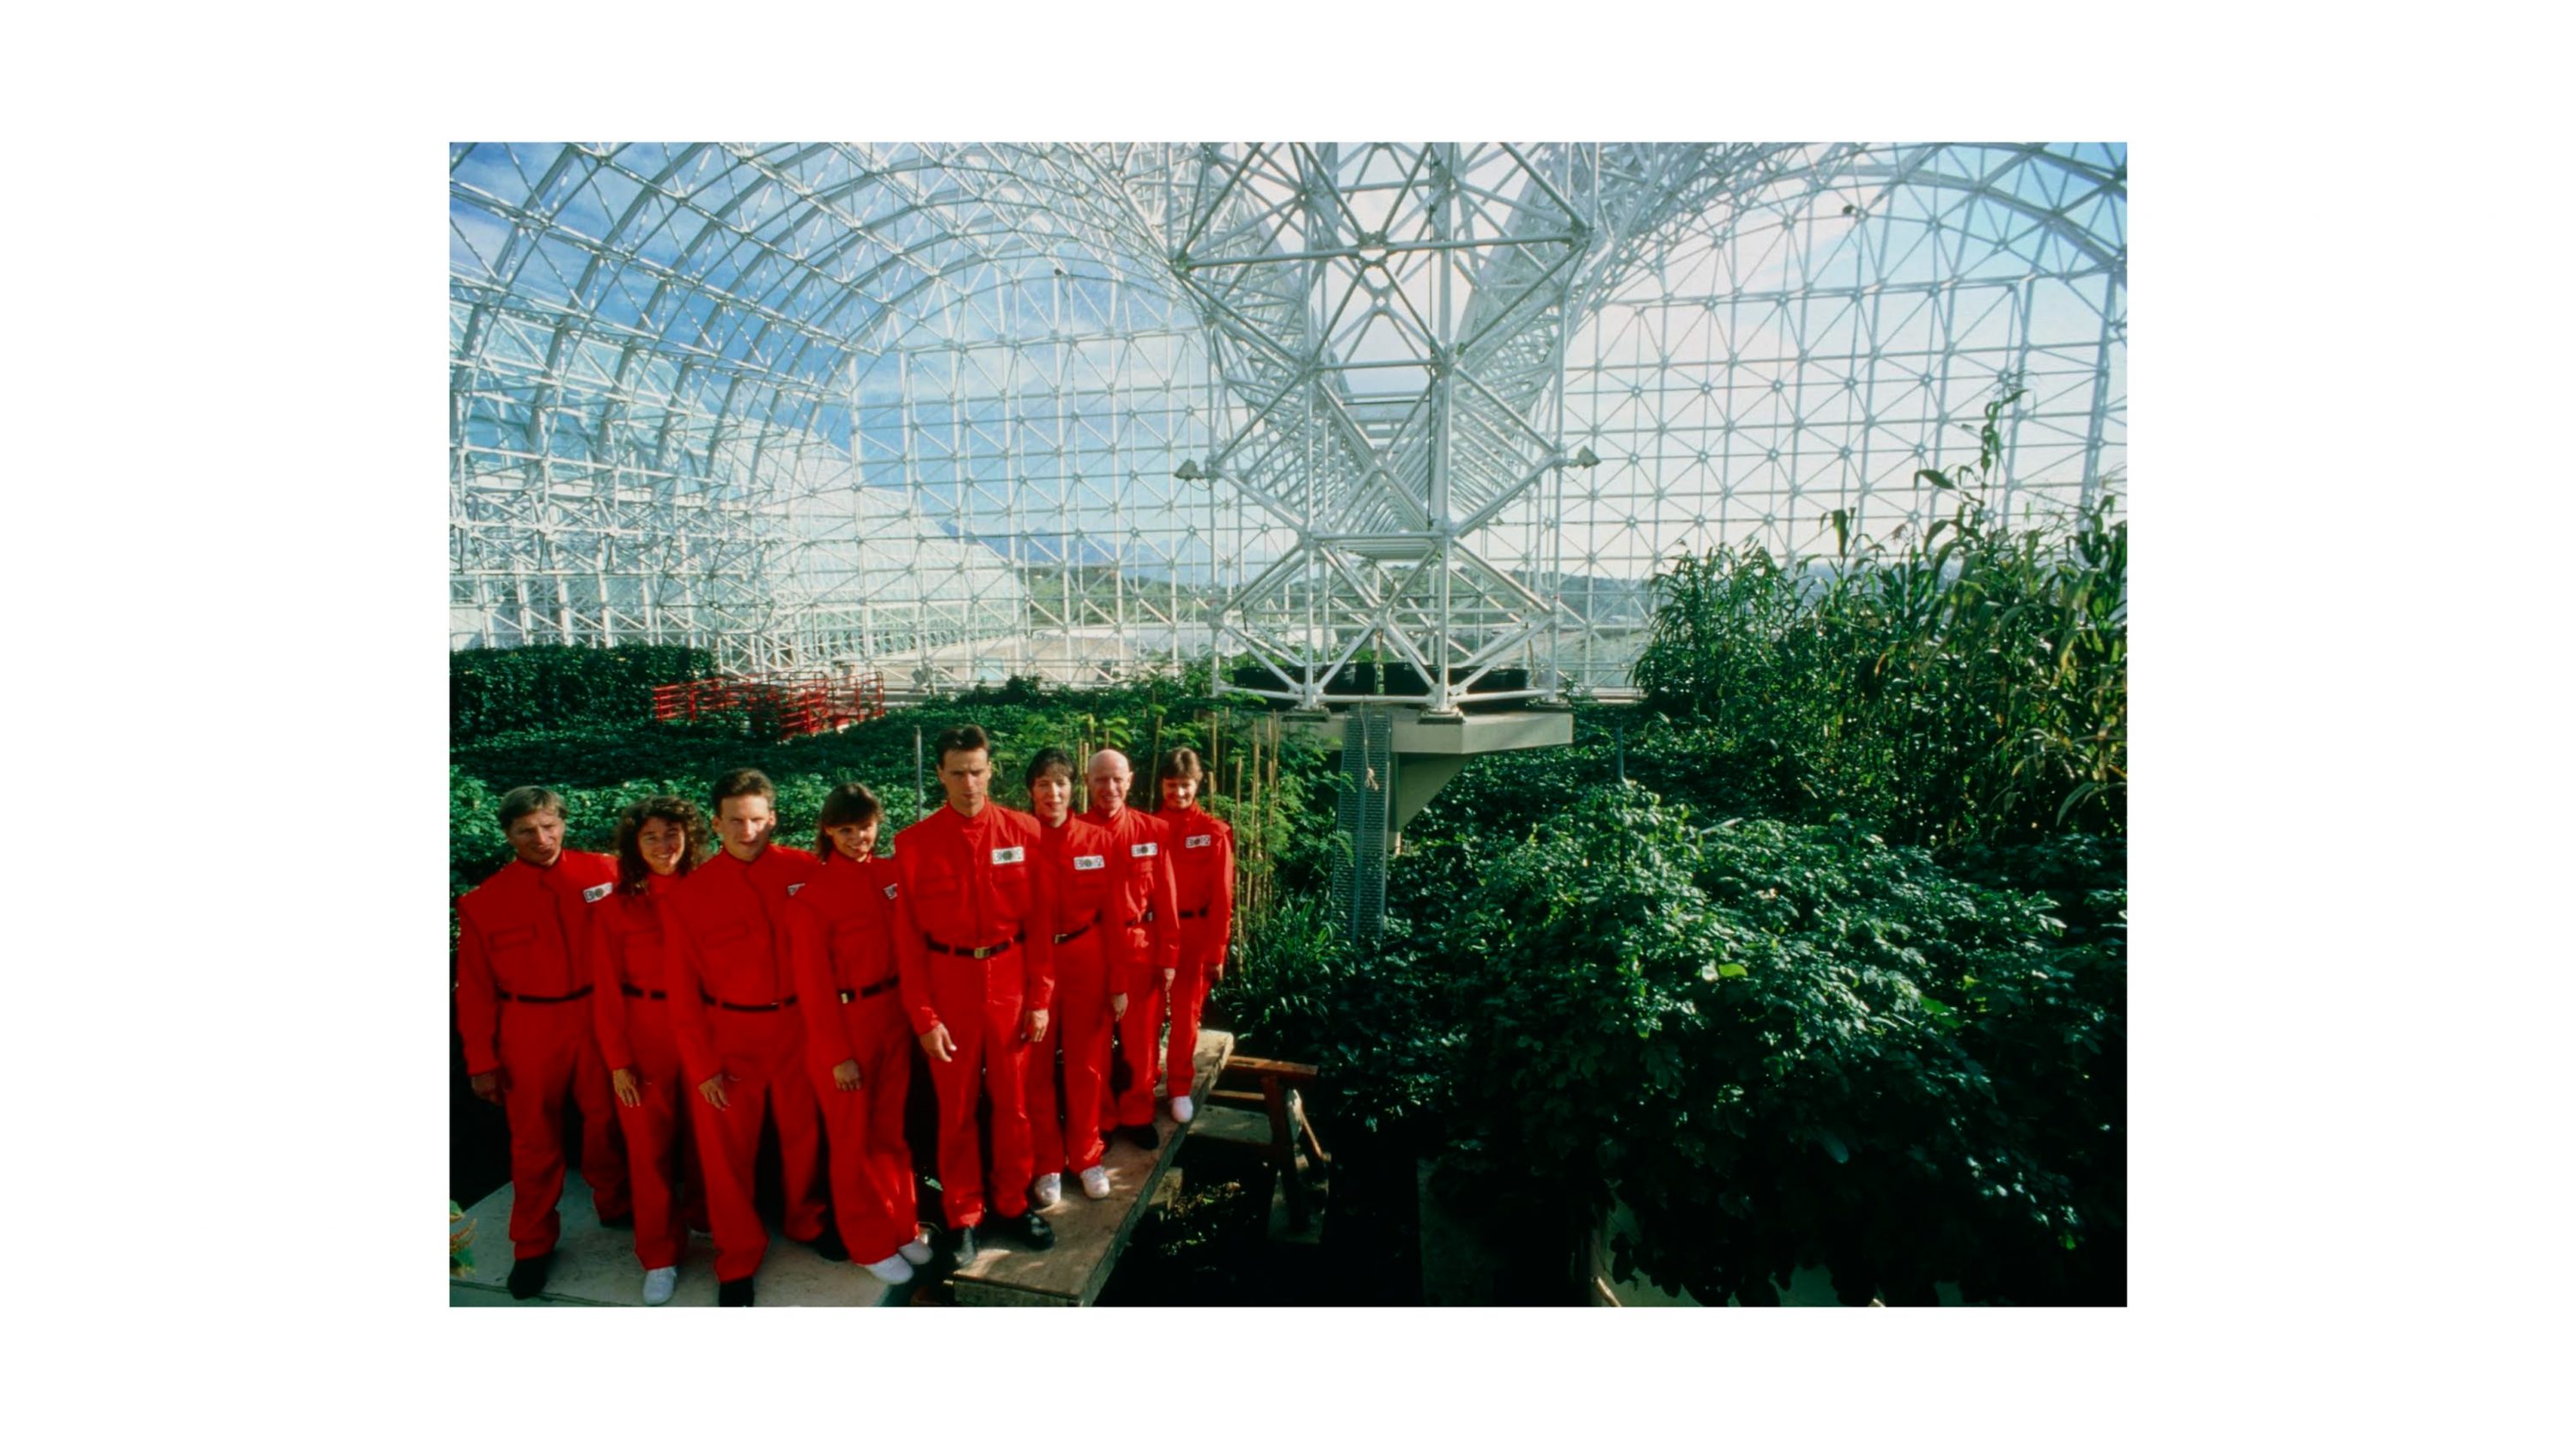 Kumu Documentary: Spaceship Earth - Kumu kunstimuuseum